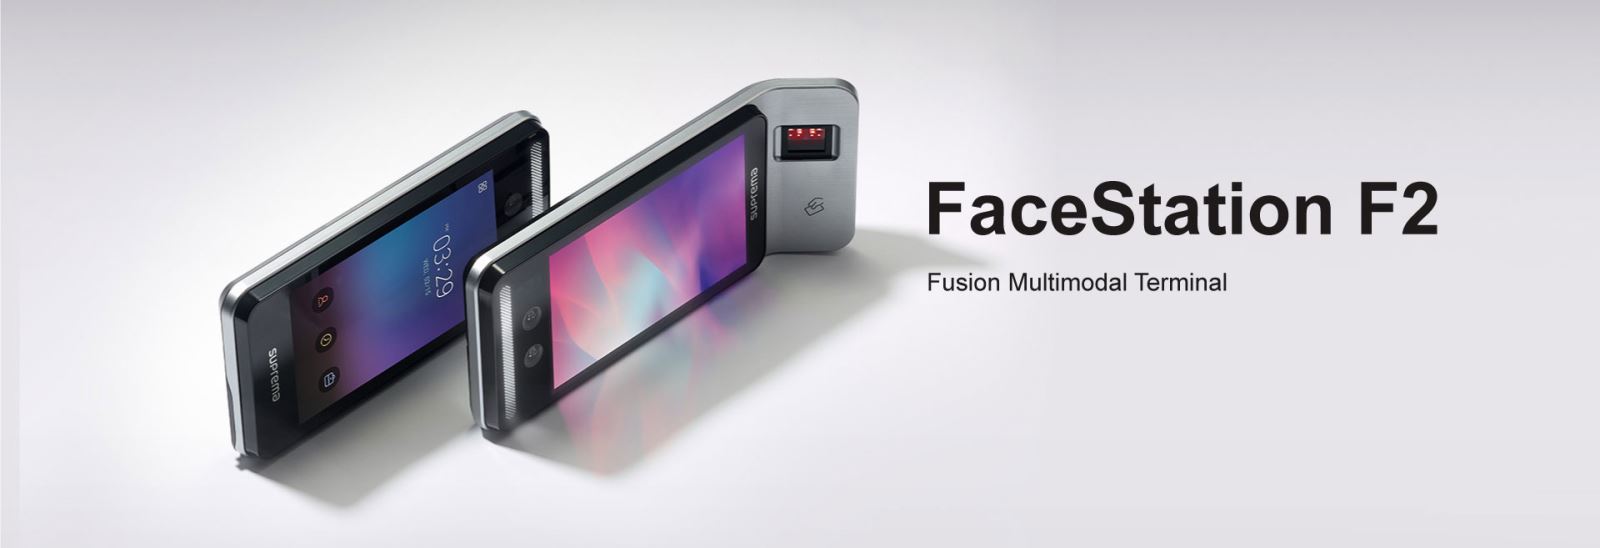 Suprema FaceStation F2 - Máy chấm công khuôn mặt tích hợp đo thân nhiệt